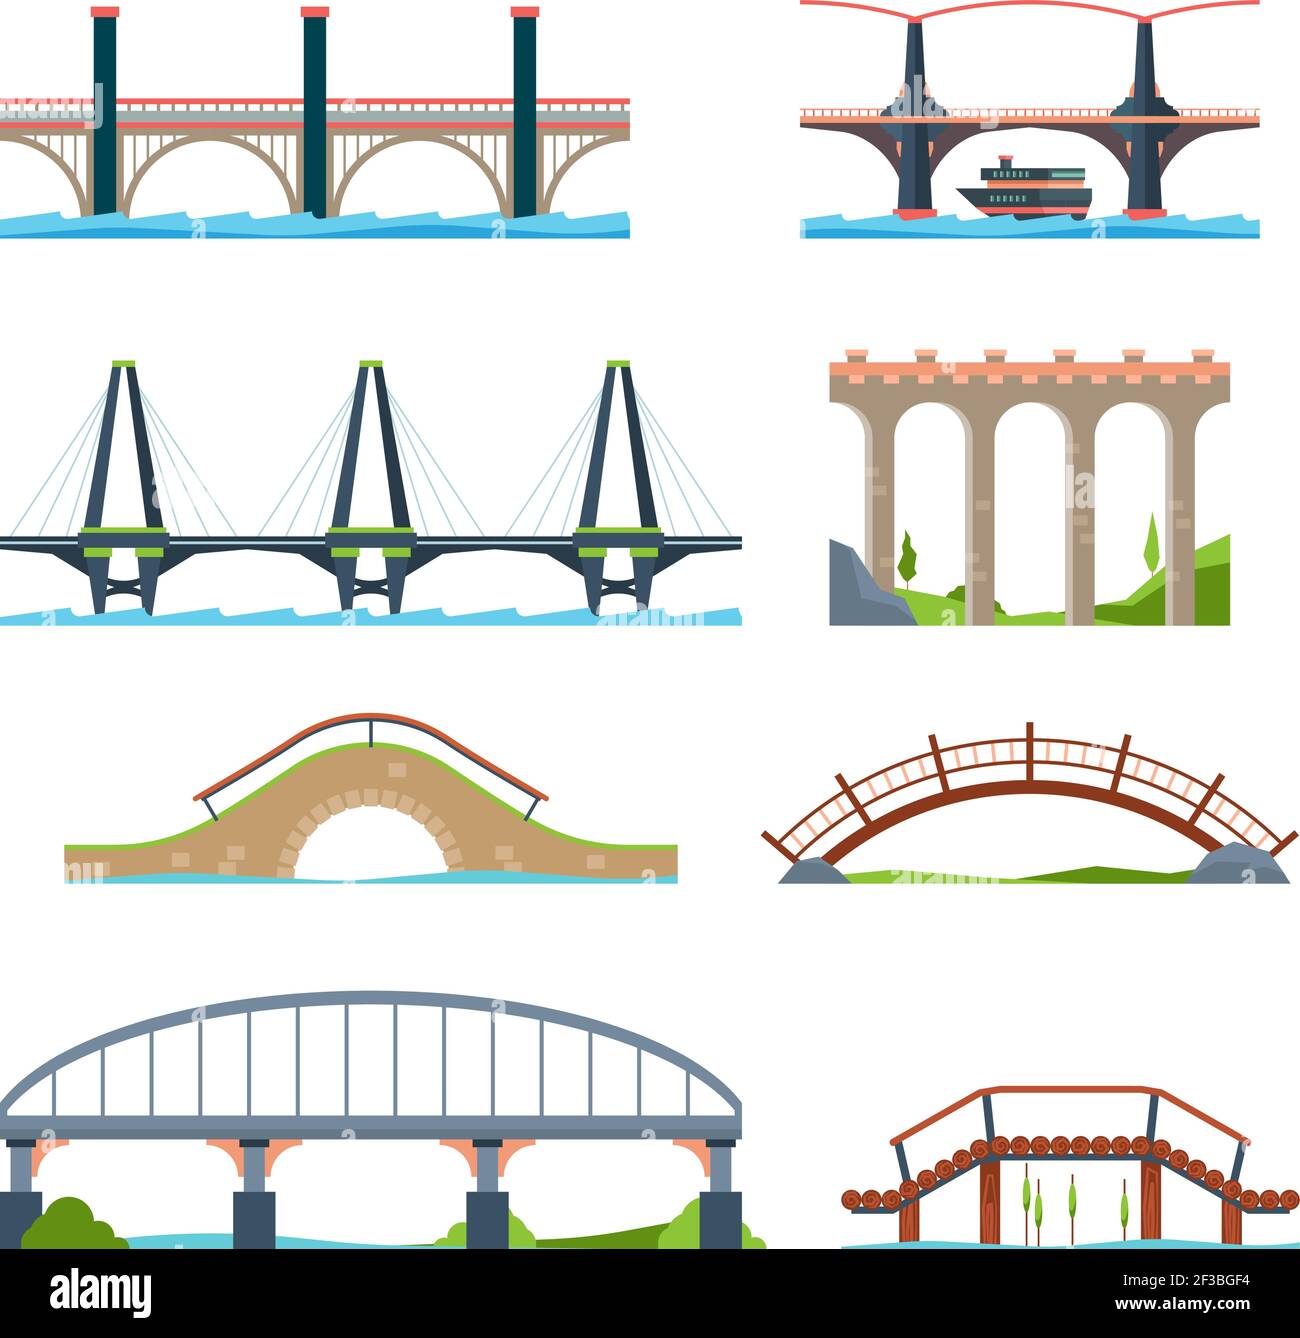 Ponts plats. Les objets urbains architecturaux sont en pont avec des images vectorielles de type colonne ou aqueduc Illustration de Vecteur